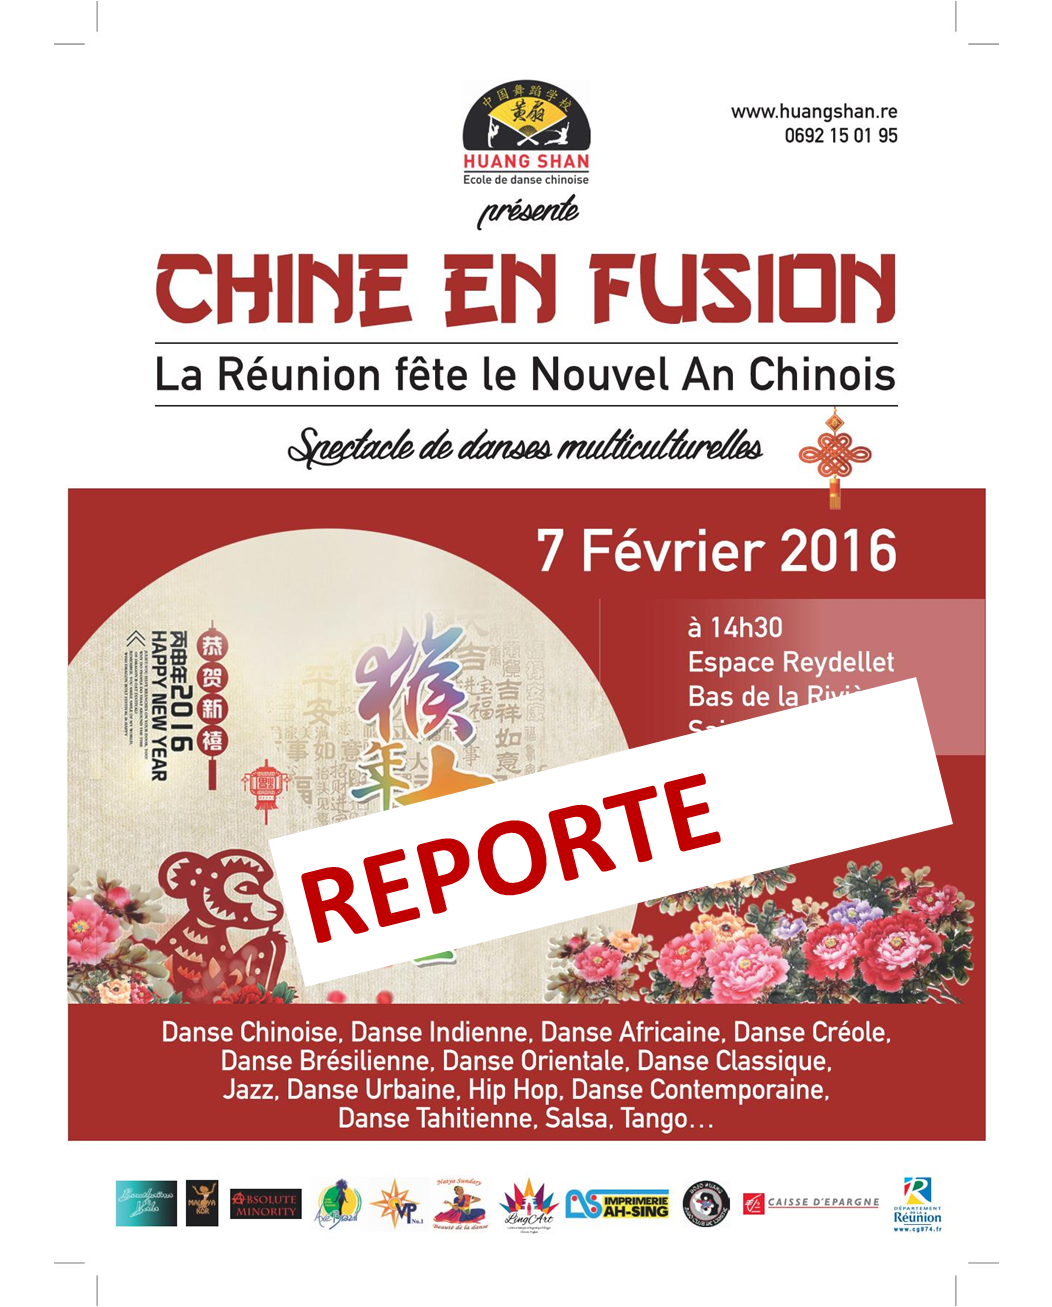 L'événement "Chine en Fusion" prévu dimanche est reporté